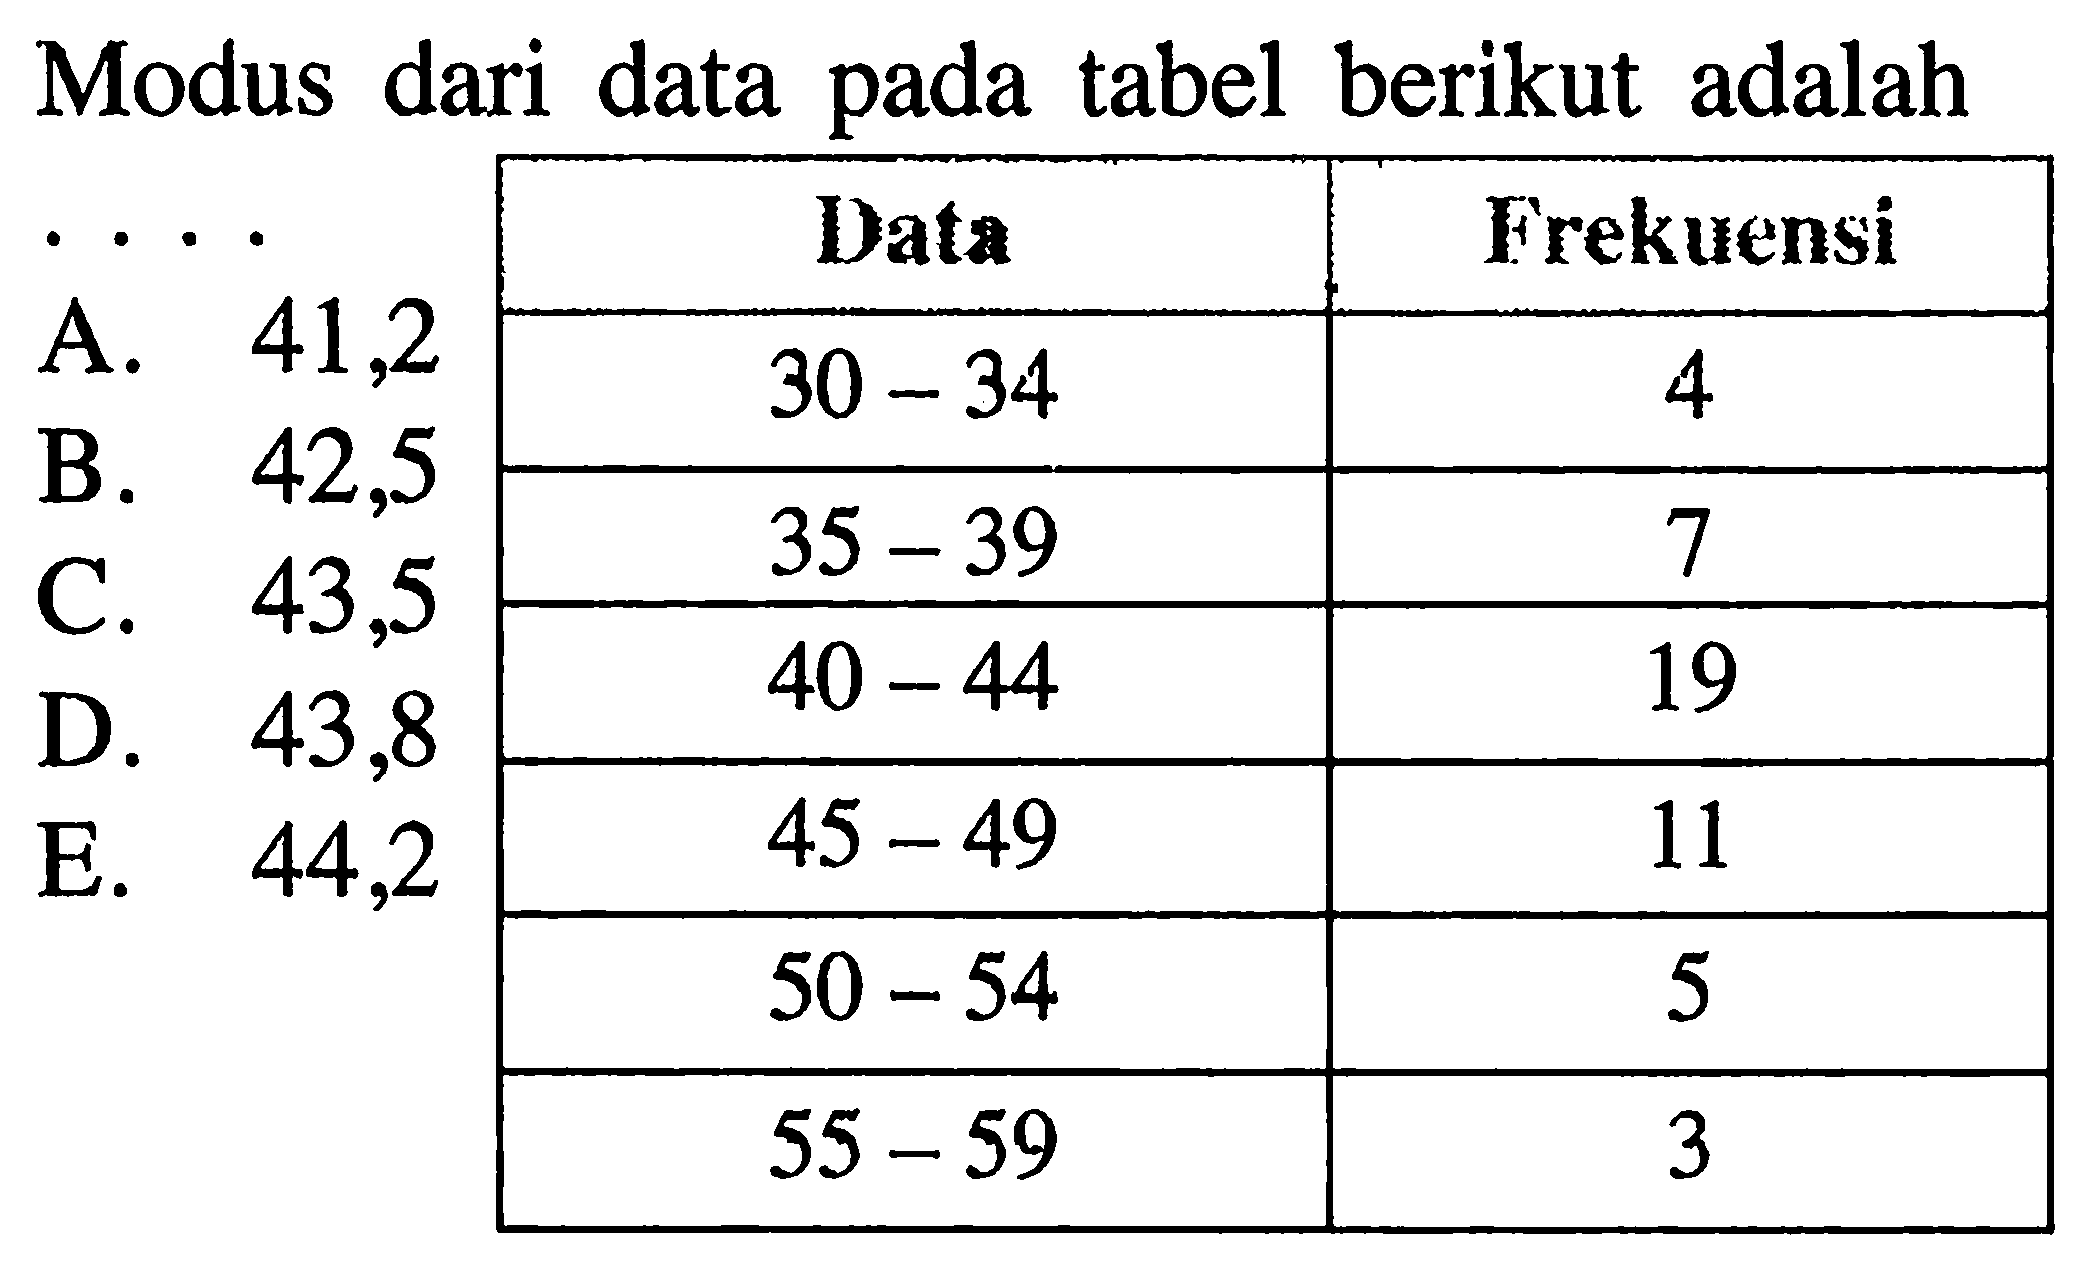 Modus dari data pada tabel berikut adalah.... Data Frekuensi 30-34 4 35-39 7 40-44 19 45-49 11 50-54 5 55-59 3